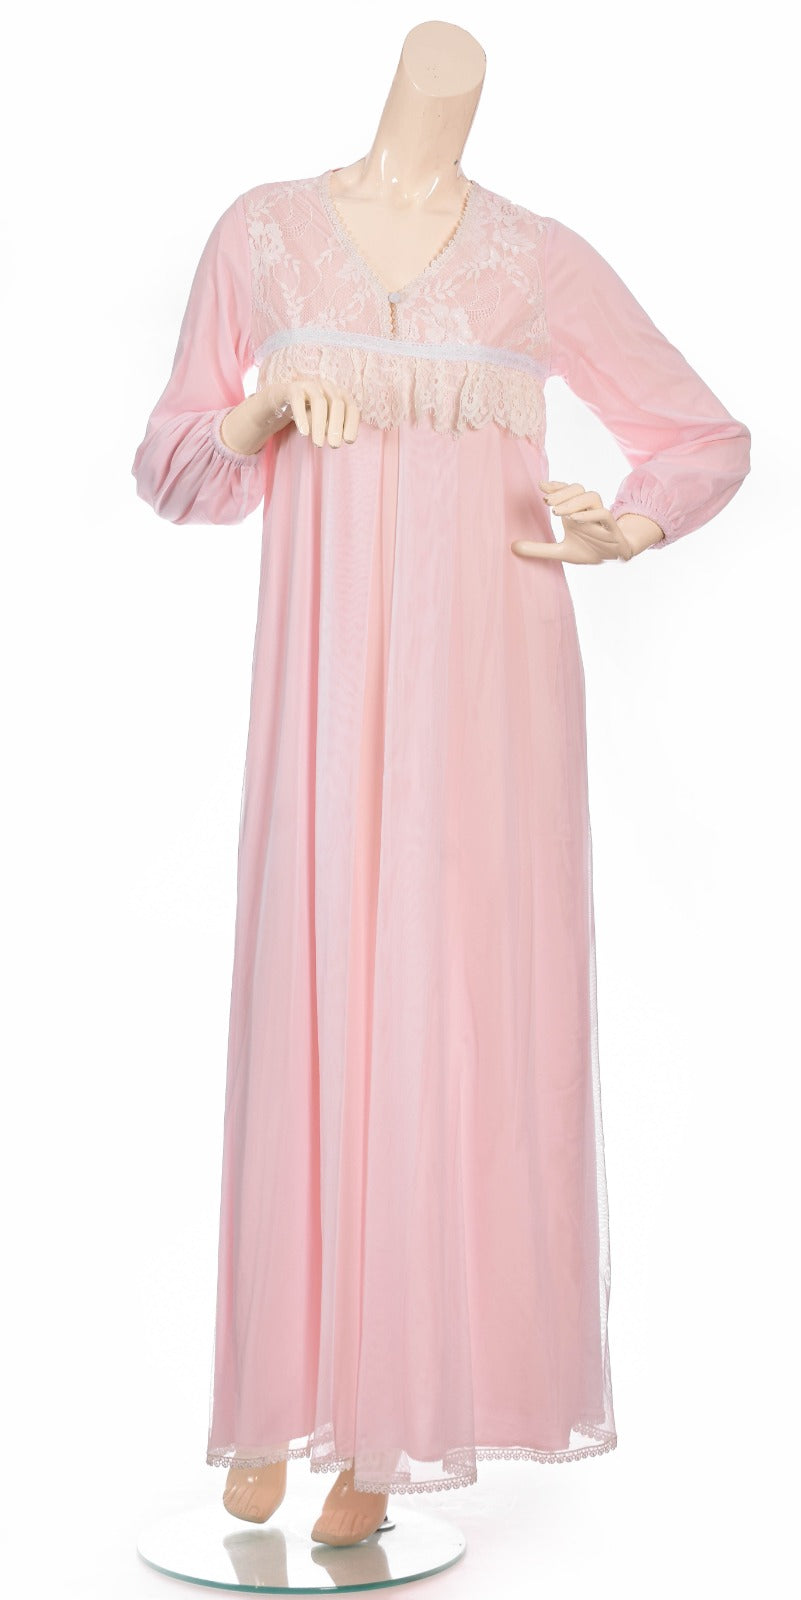 Delicate Lace & Chiffon Night Dress - Light Pink Dress Coco Box 